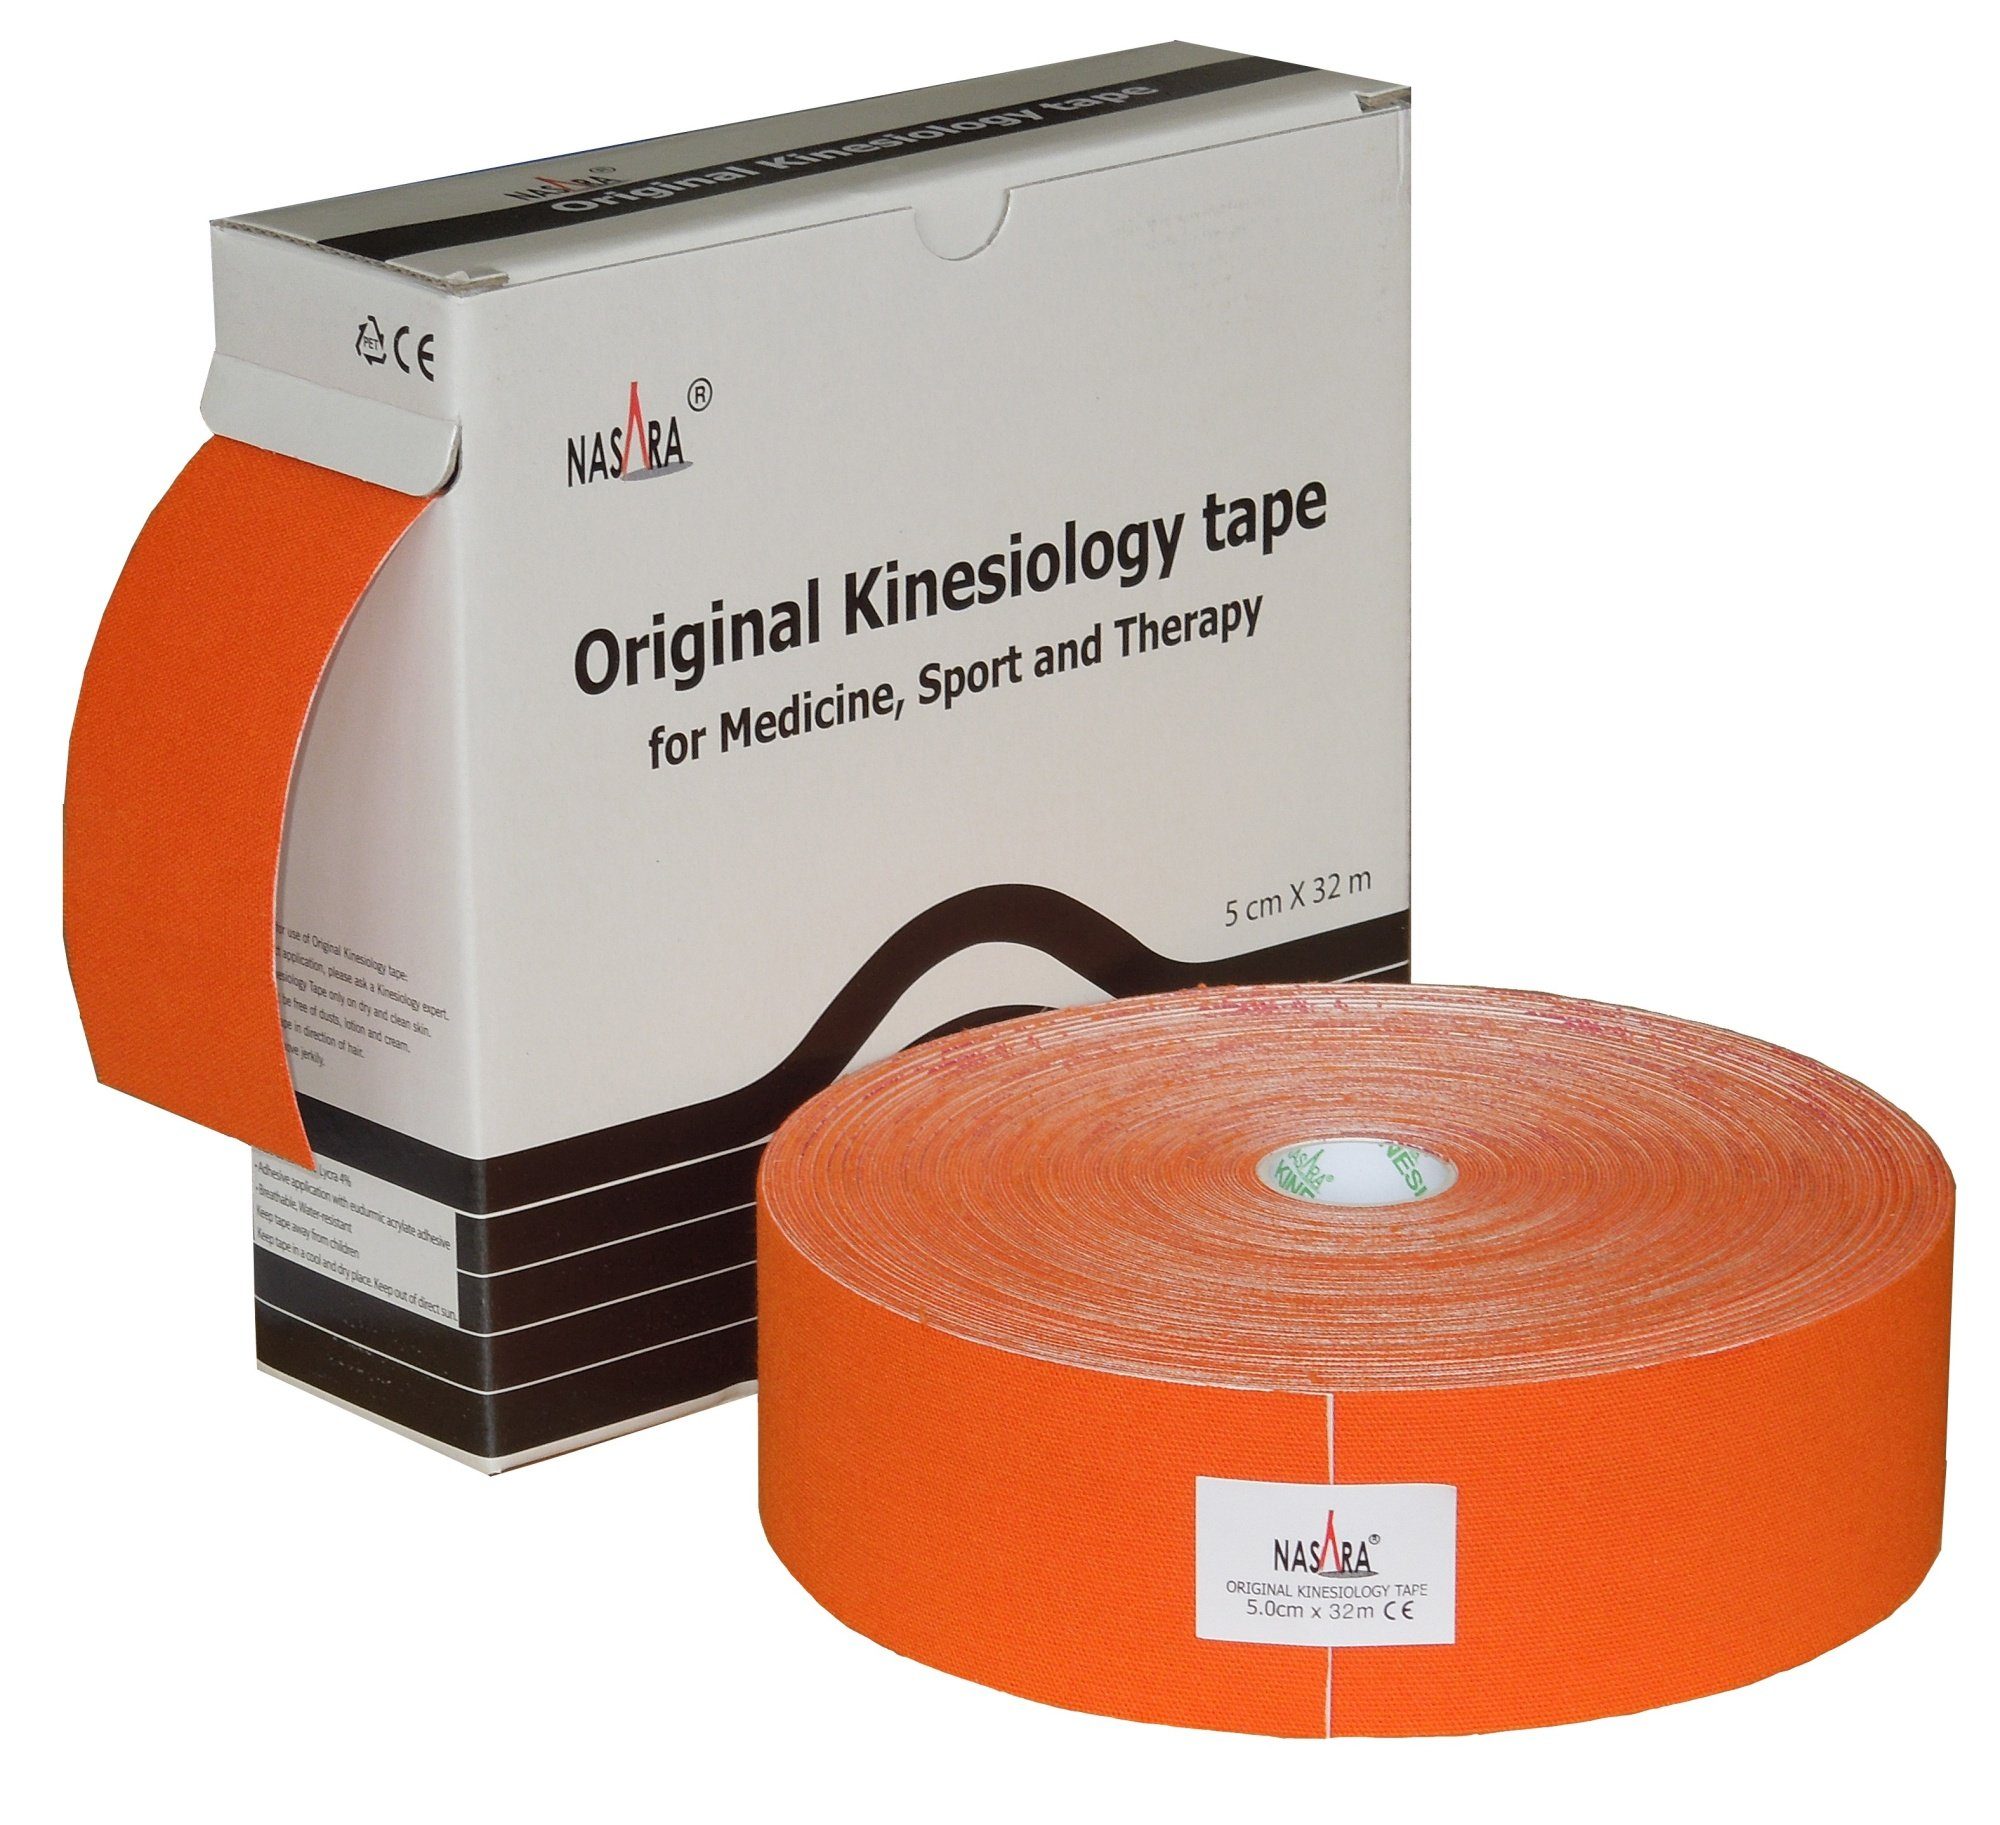 NASARA Kinesiologie-Tape 5cm x 32m in 10 Farben